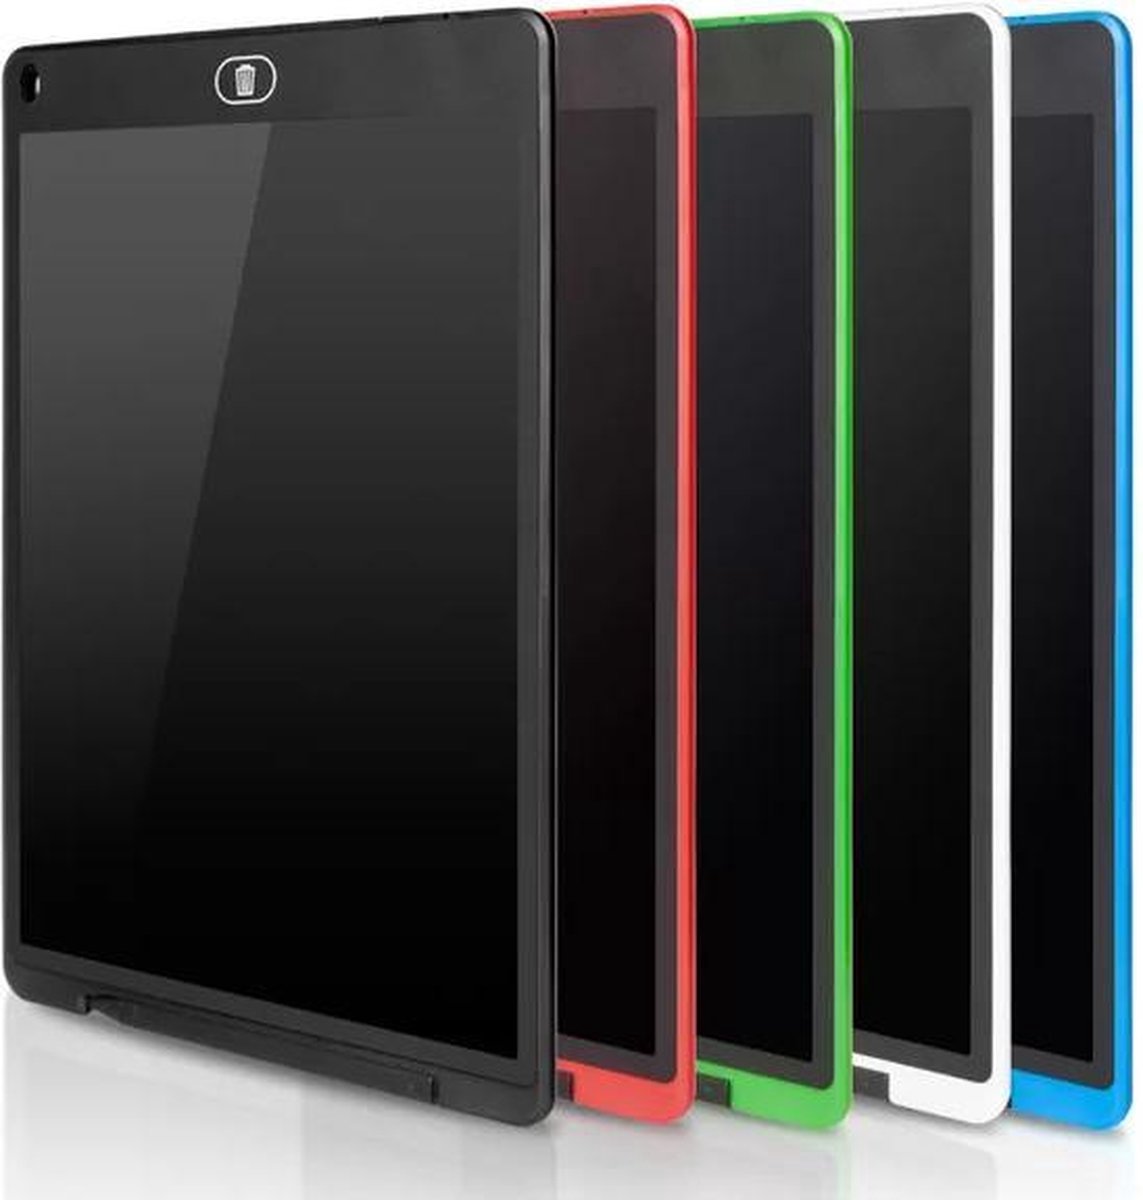 LCD-schrijfbord, 12 inch LCD Schrijven Teken Tablet kleurrijk scherm LCD-schrijftablet voor kinderen en volwassenen, uitwisbaar digitaal tekenbord Draagbare Elektronisch schrijfplank, Groen.